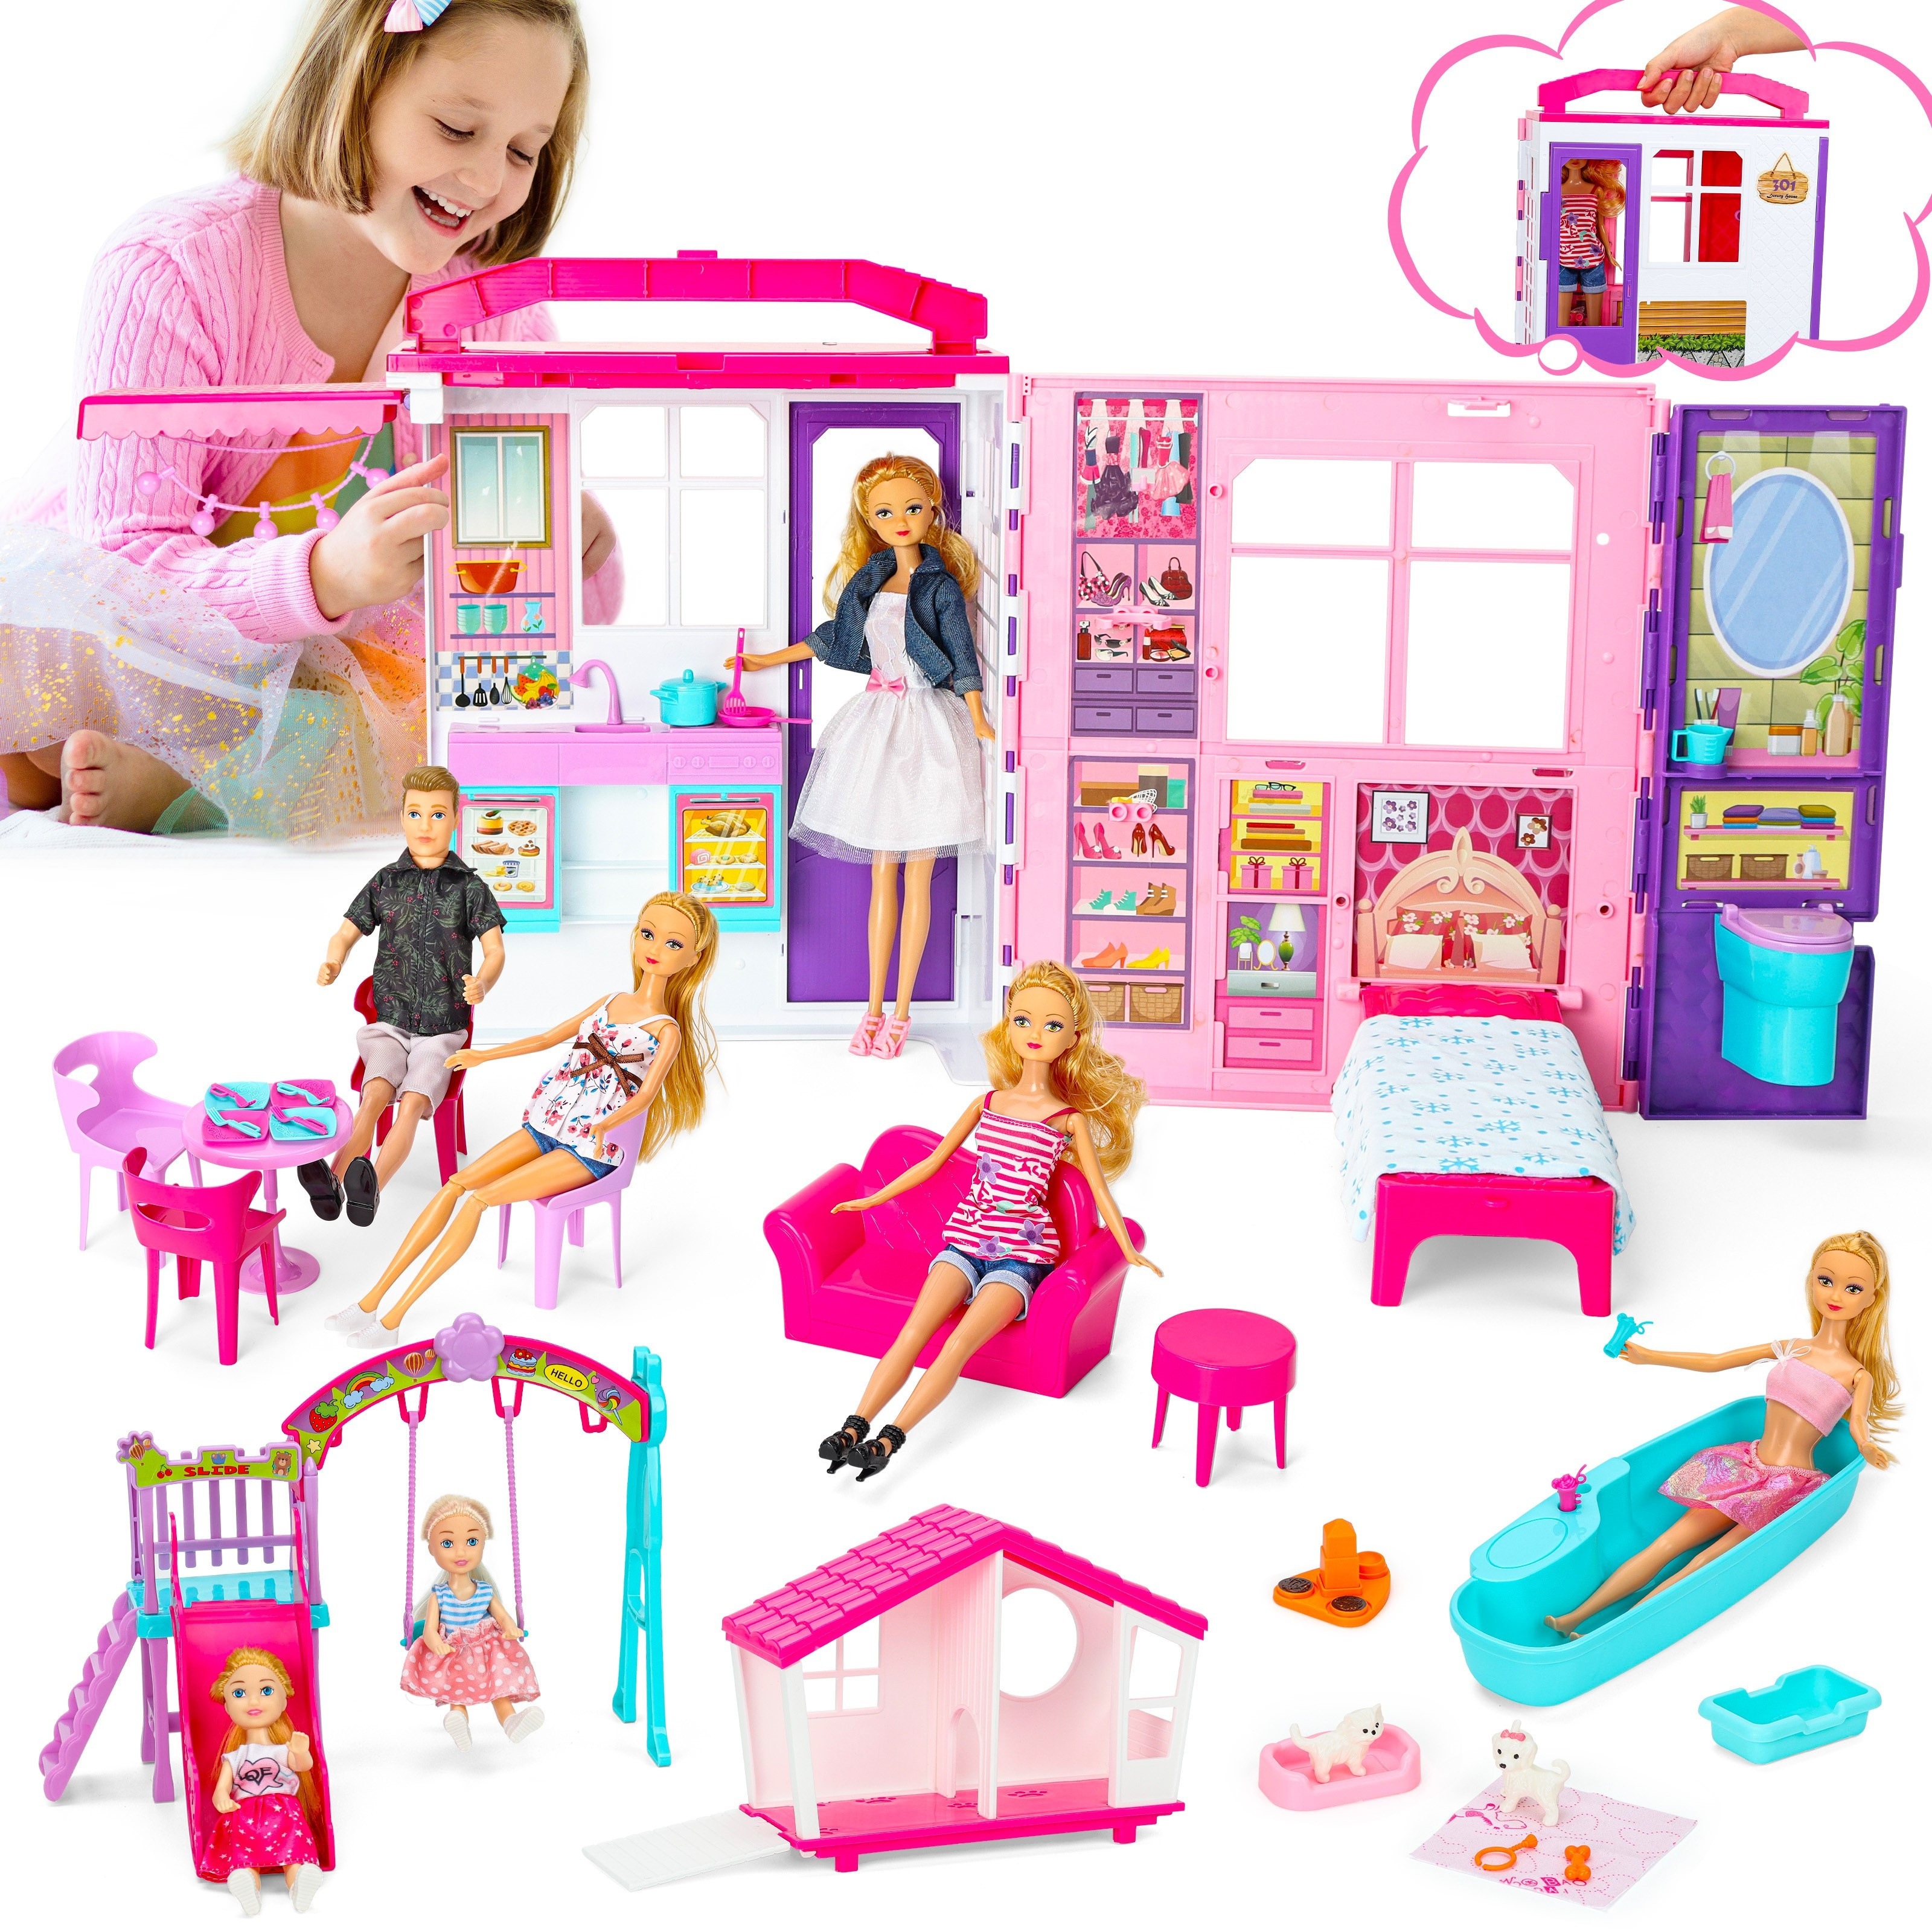 Barbie Dream House Accessories Furniture